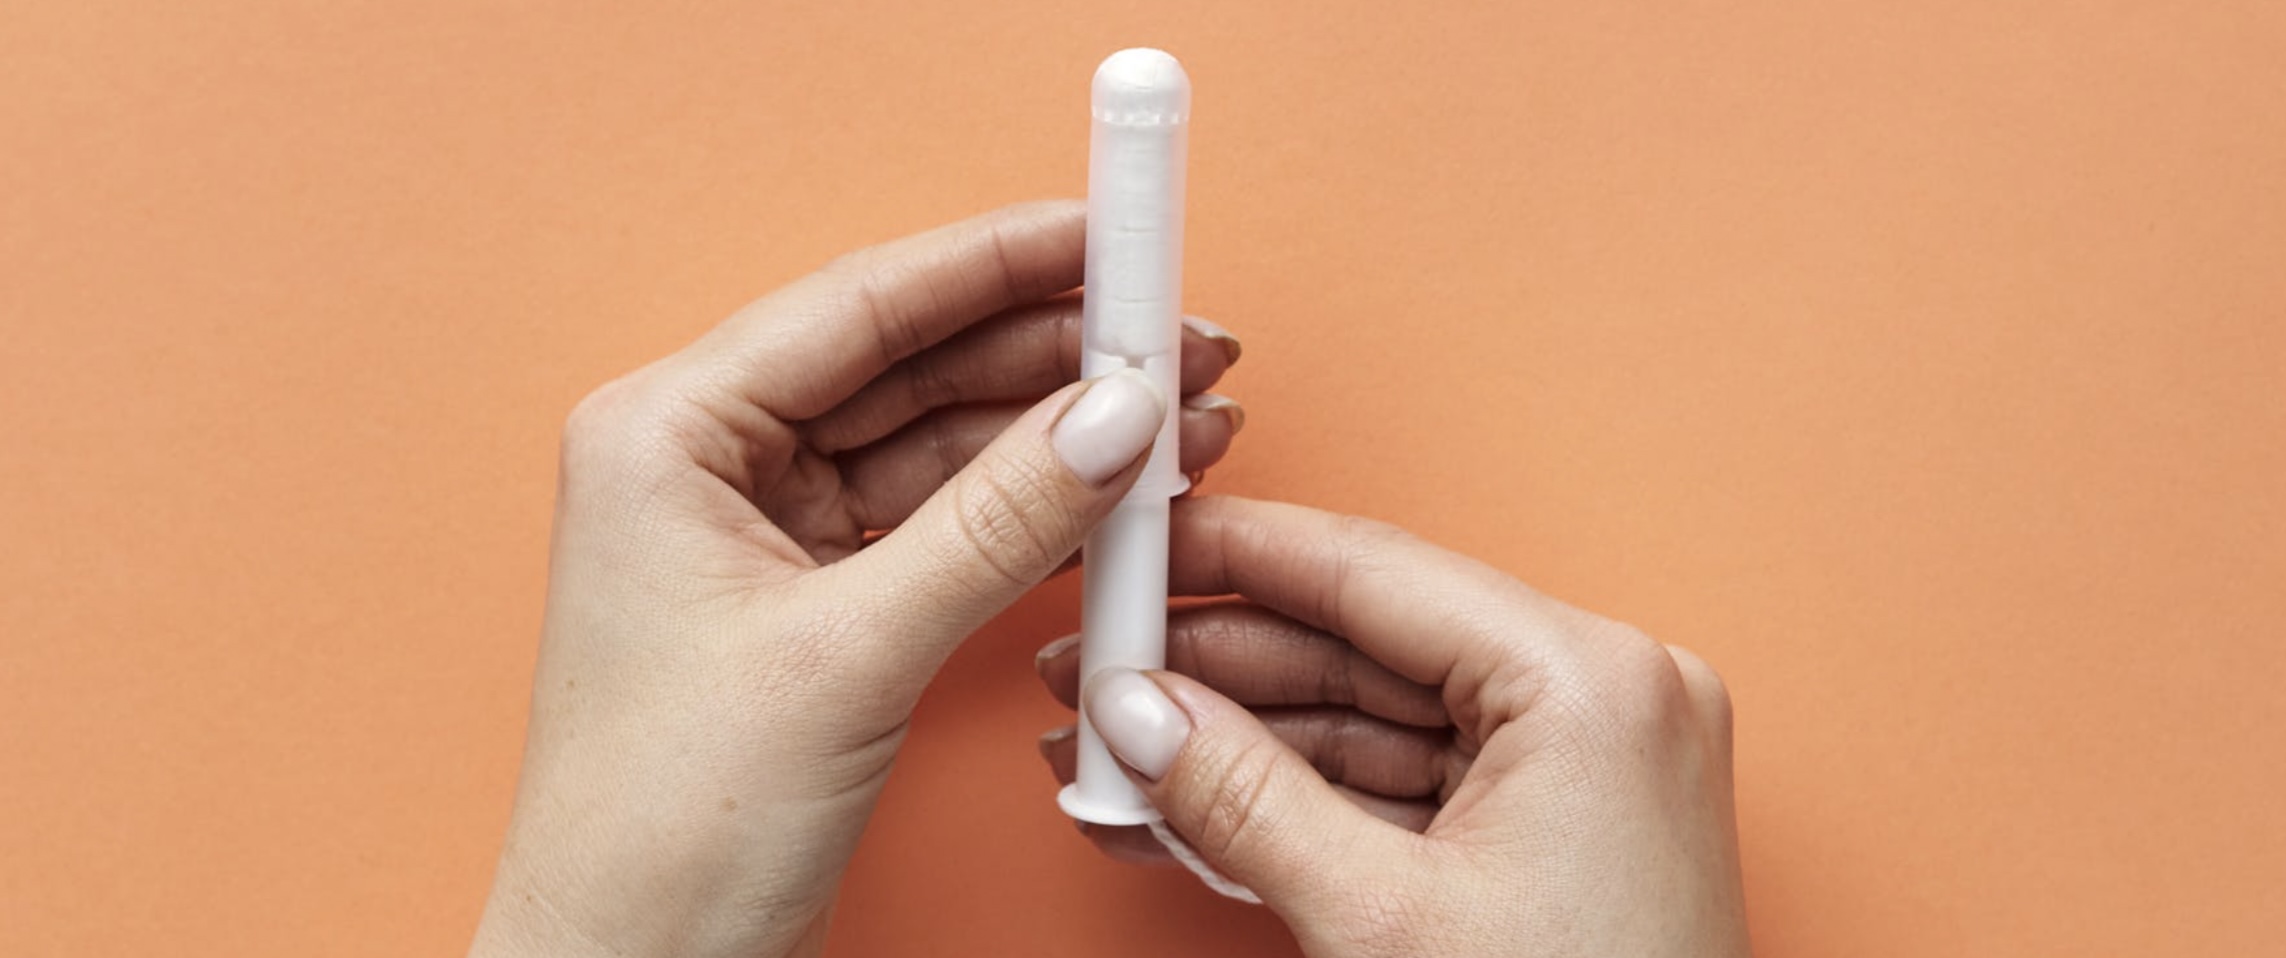 Endométriose : les tampons hygiéniques sont-ils en cause ? - Marie